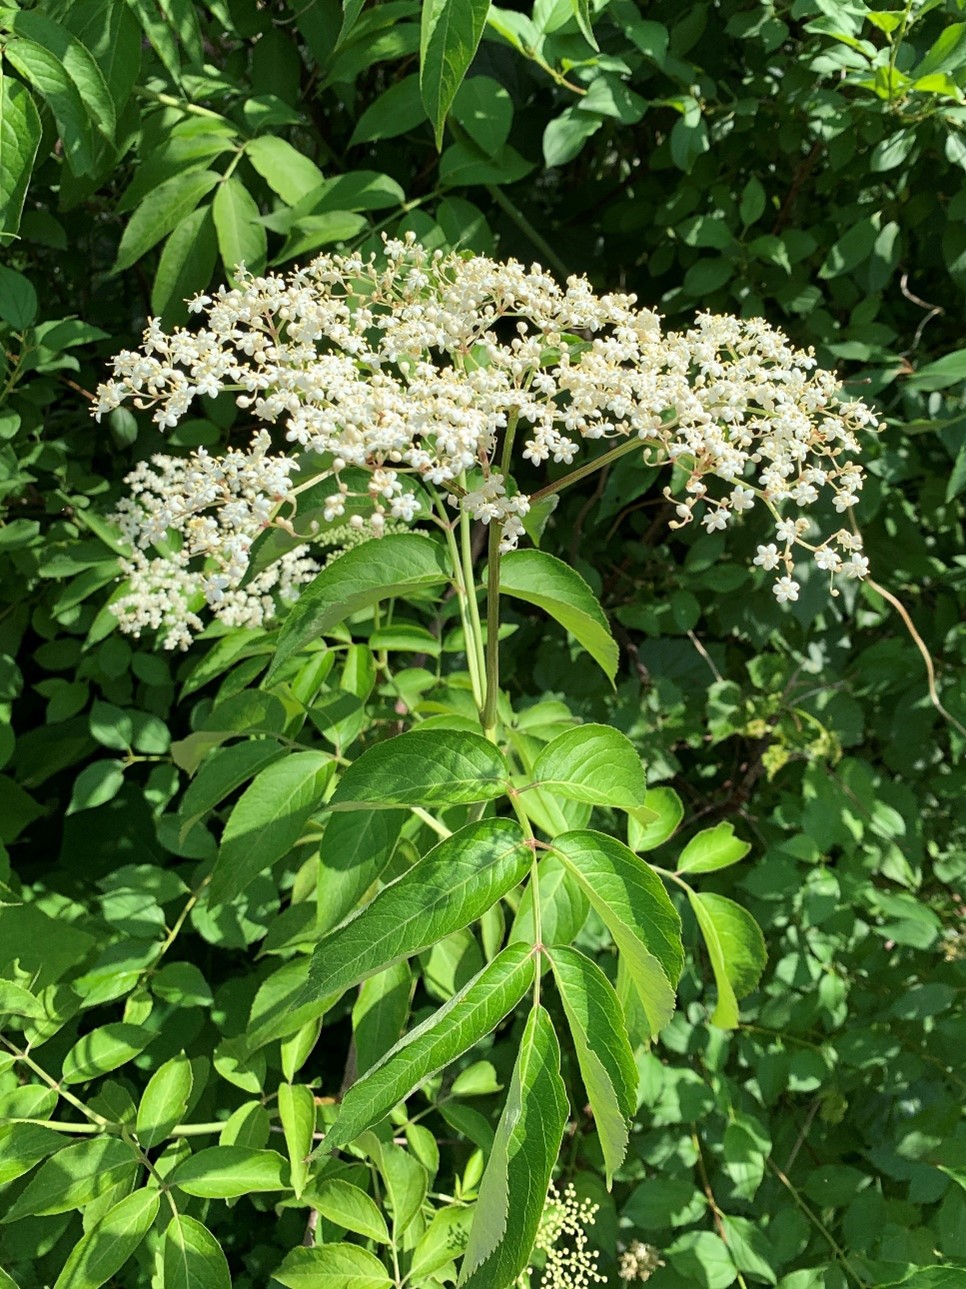 Common elderberry flowers.